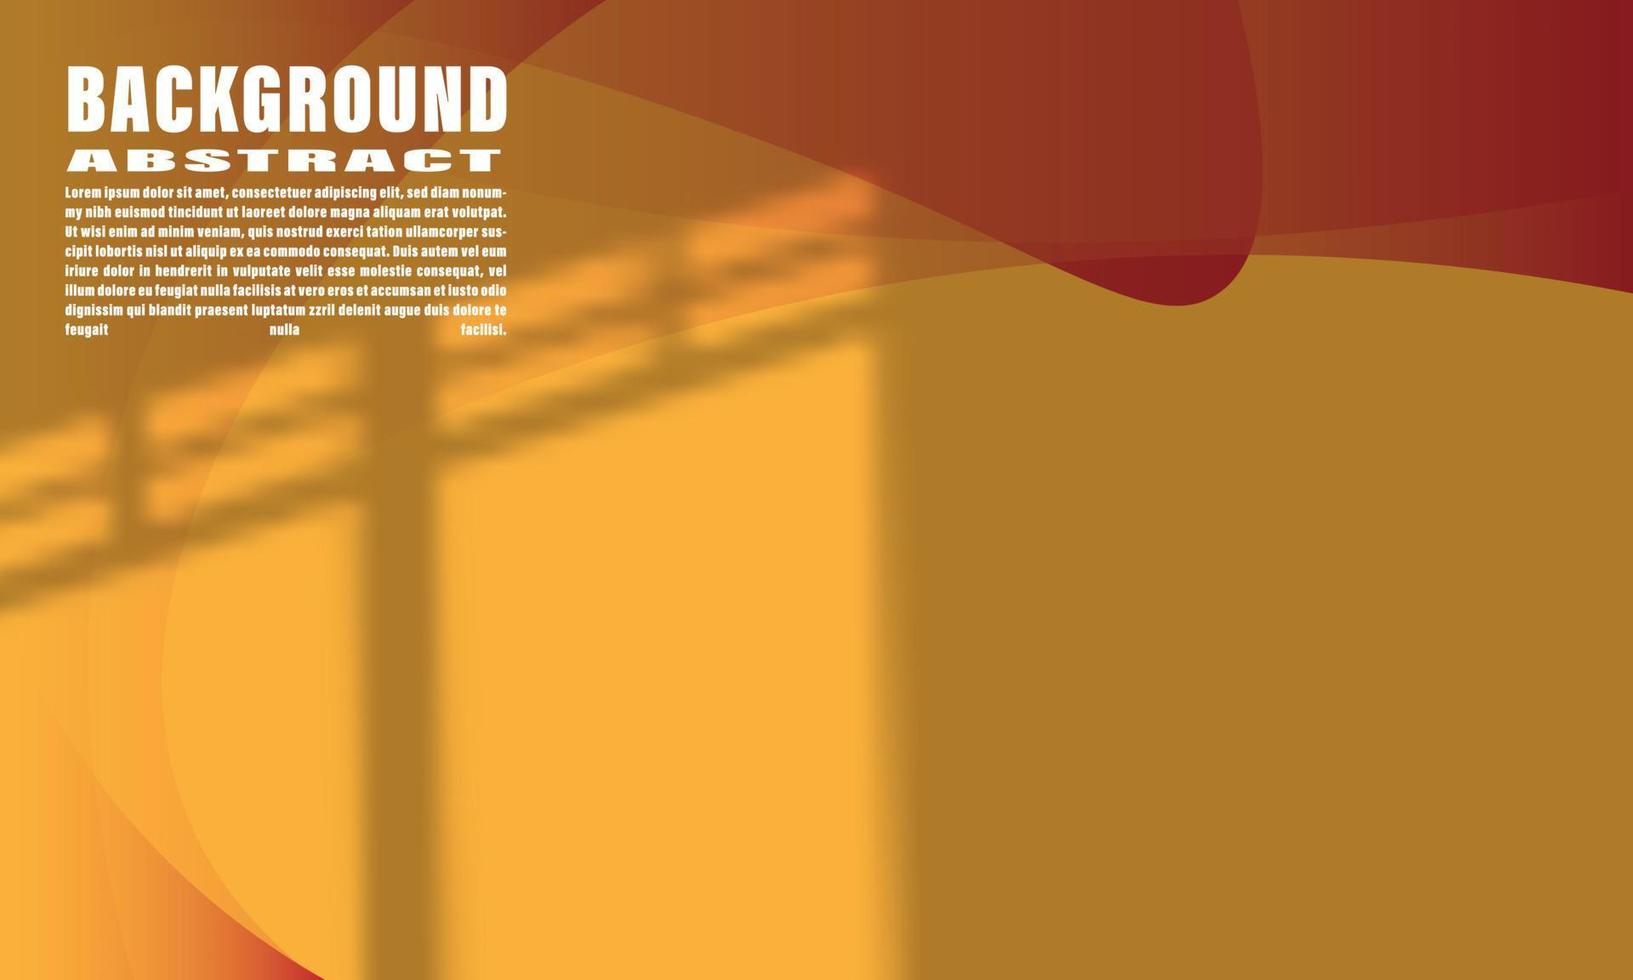 fondo abstracto gemetric líquido colorido forma de onda naranja y rojo con elegante superposición de moda shdaow para diseño web eps 10 vector